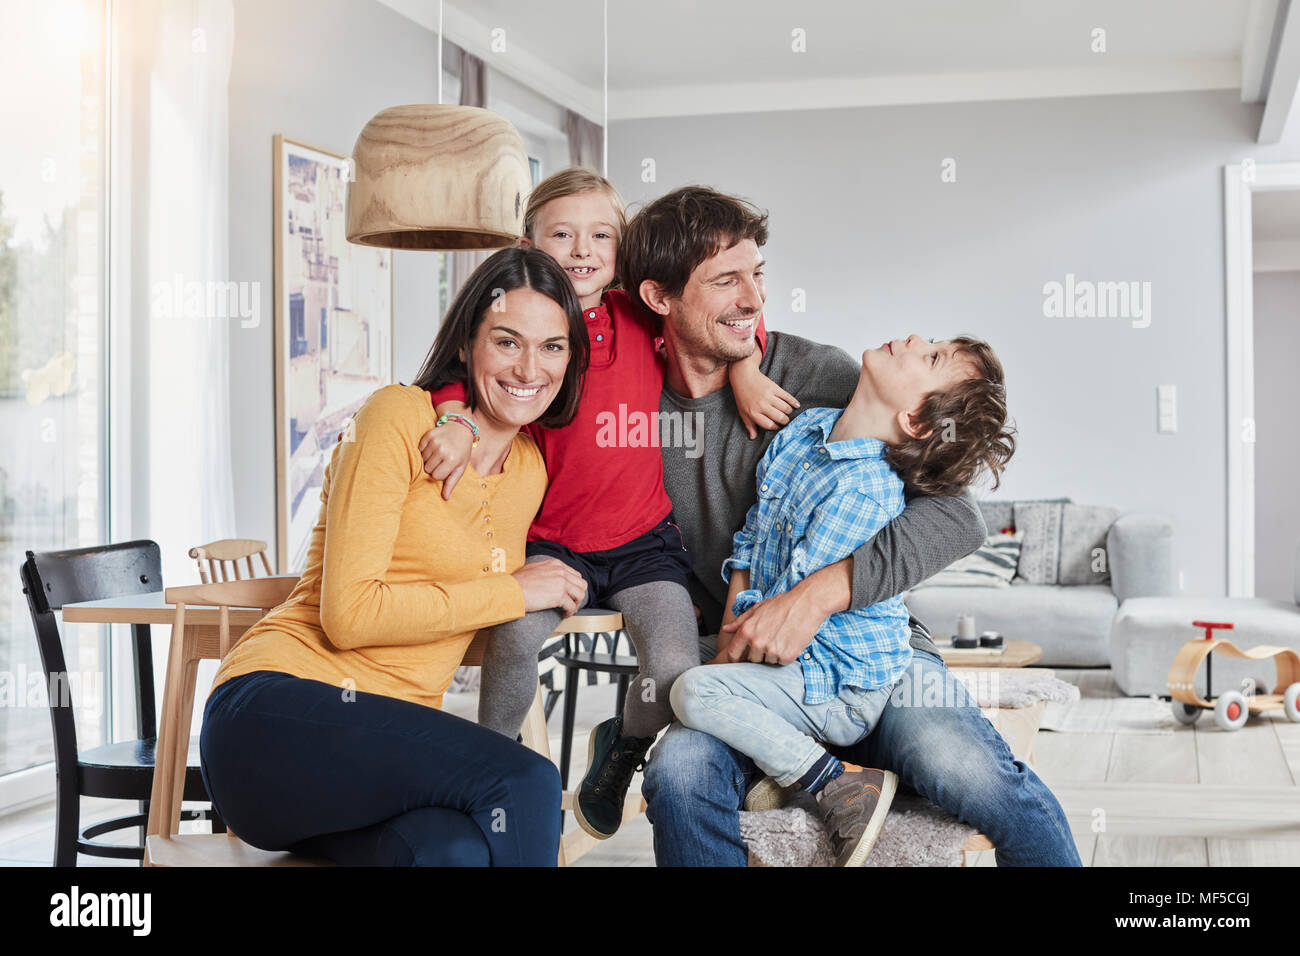 Portrait de famille heureuse avec deux enfants à la maison Banque D'Images